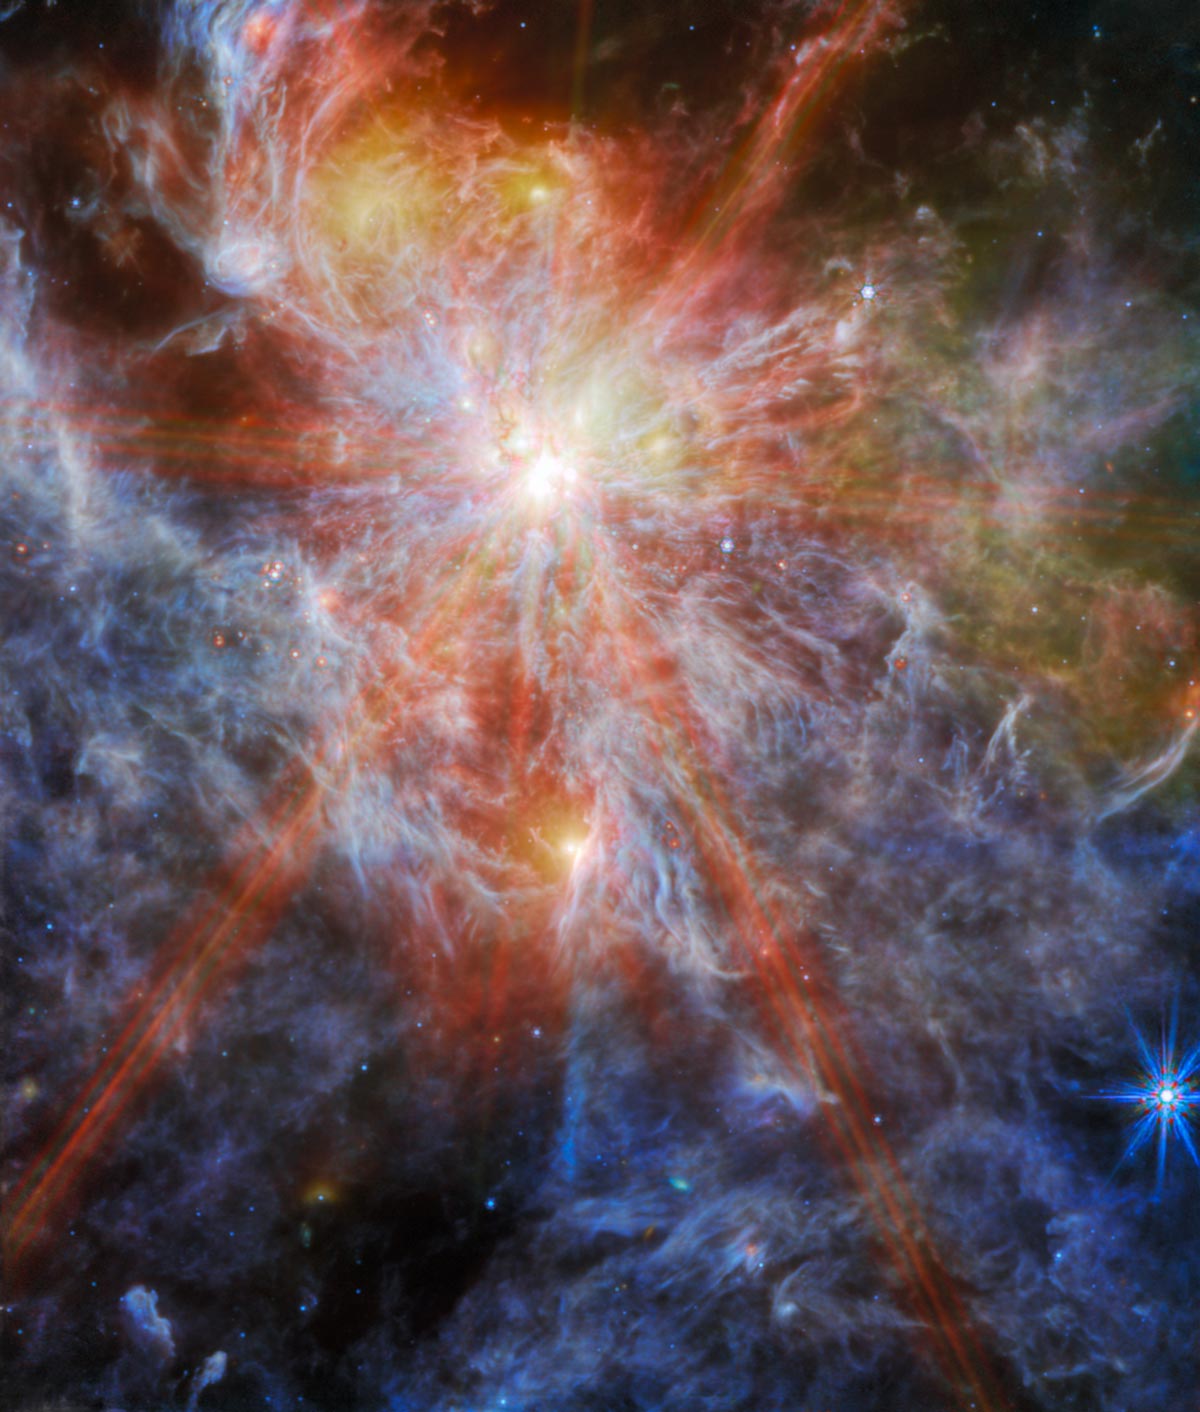 Webb Uzay Teleskobu devasa bir yıldız oluşum kompleksini ortaya çıkarıyor